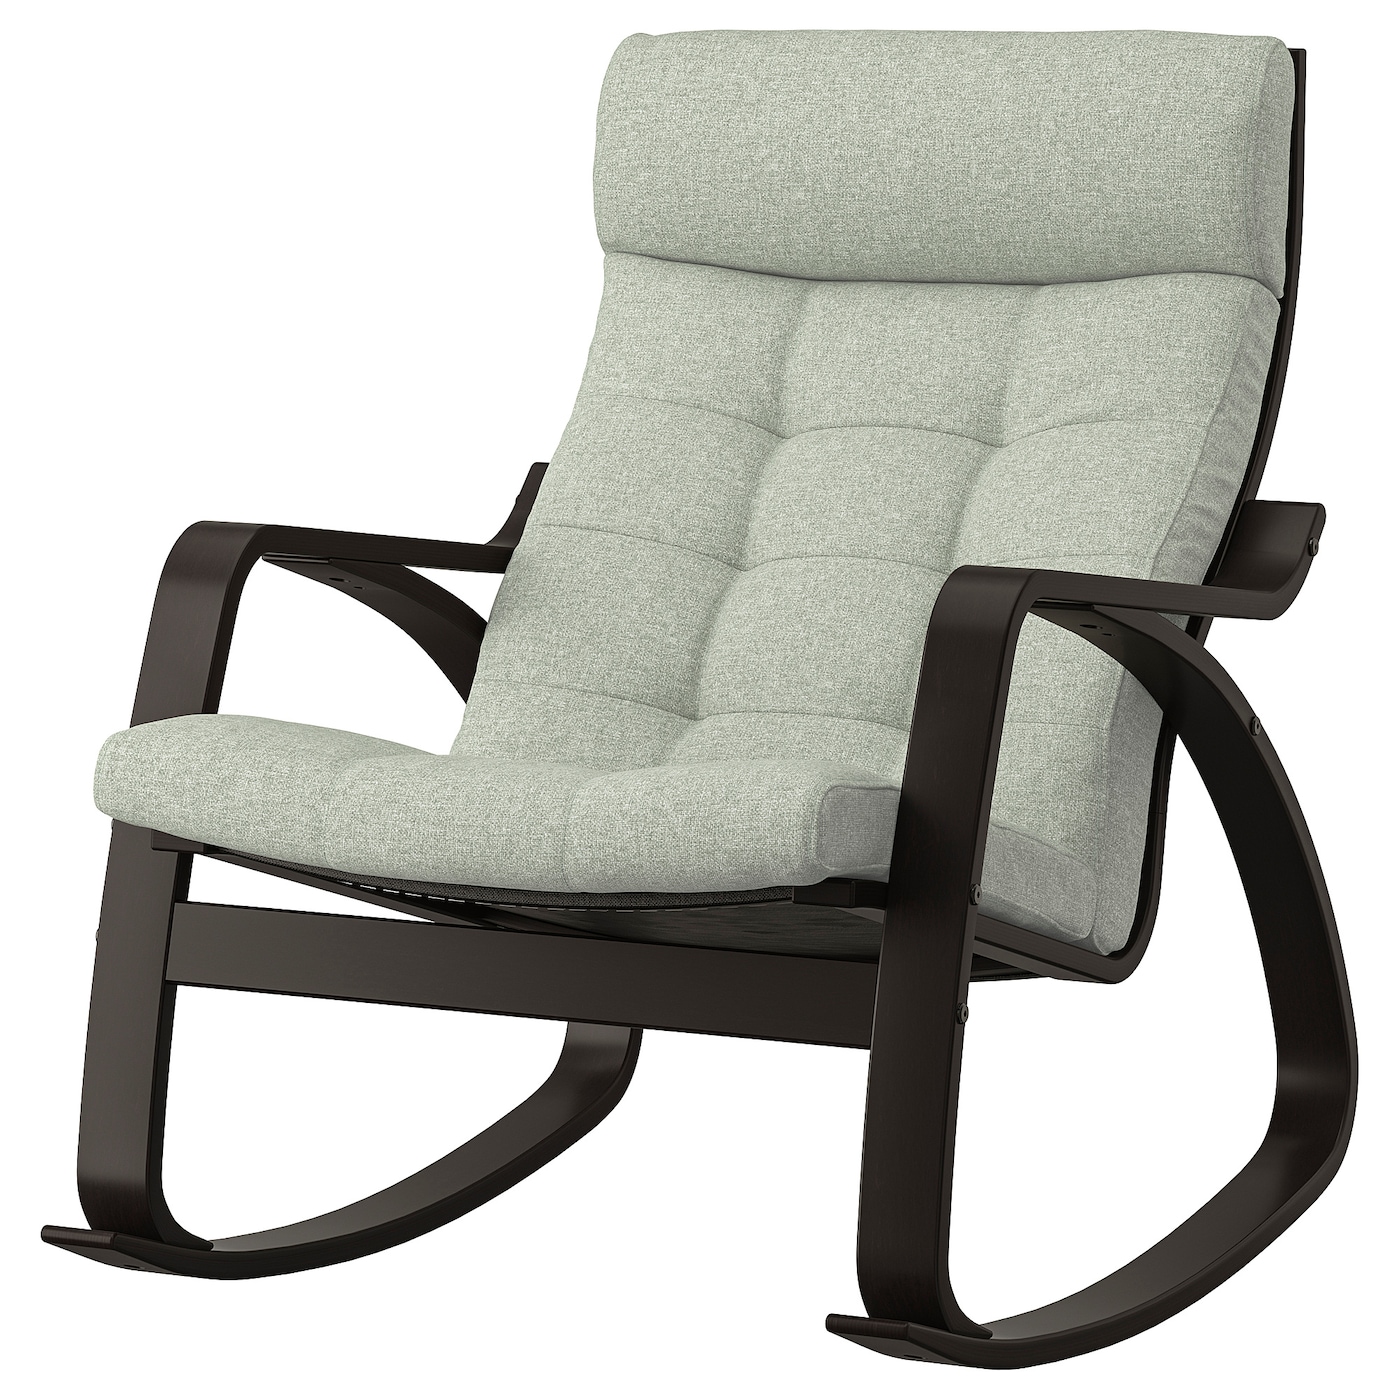 ПОЭНГ Кресло-качалка, черно-коричневый/Гуннаред светло-зеленый POÄNG IKEA кресло качалка модель 3 580х870х1040мм венге коричневый